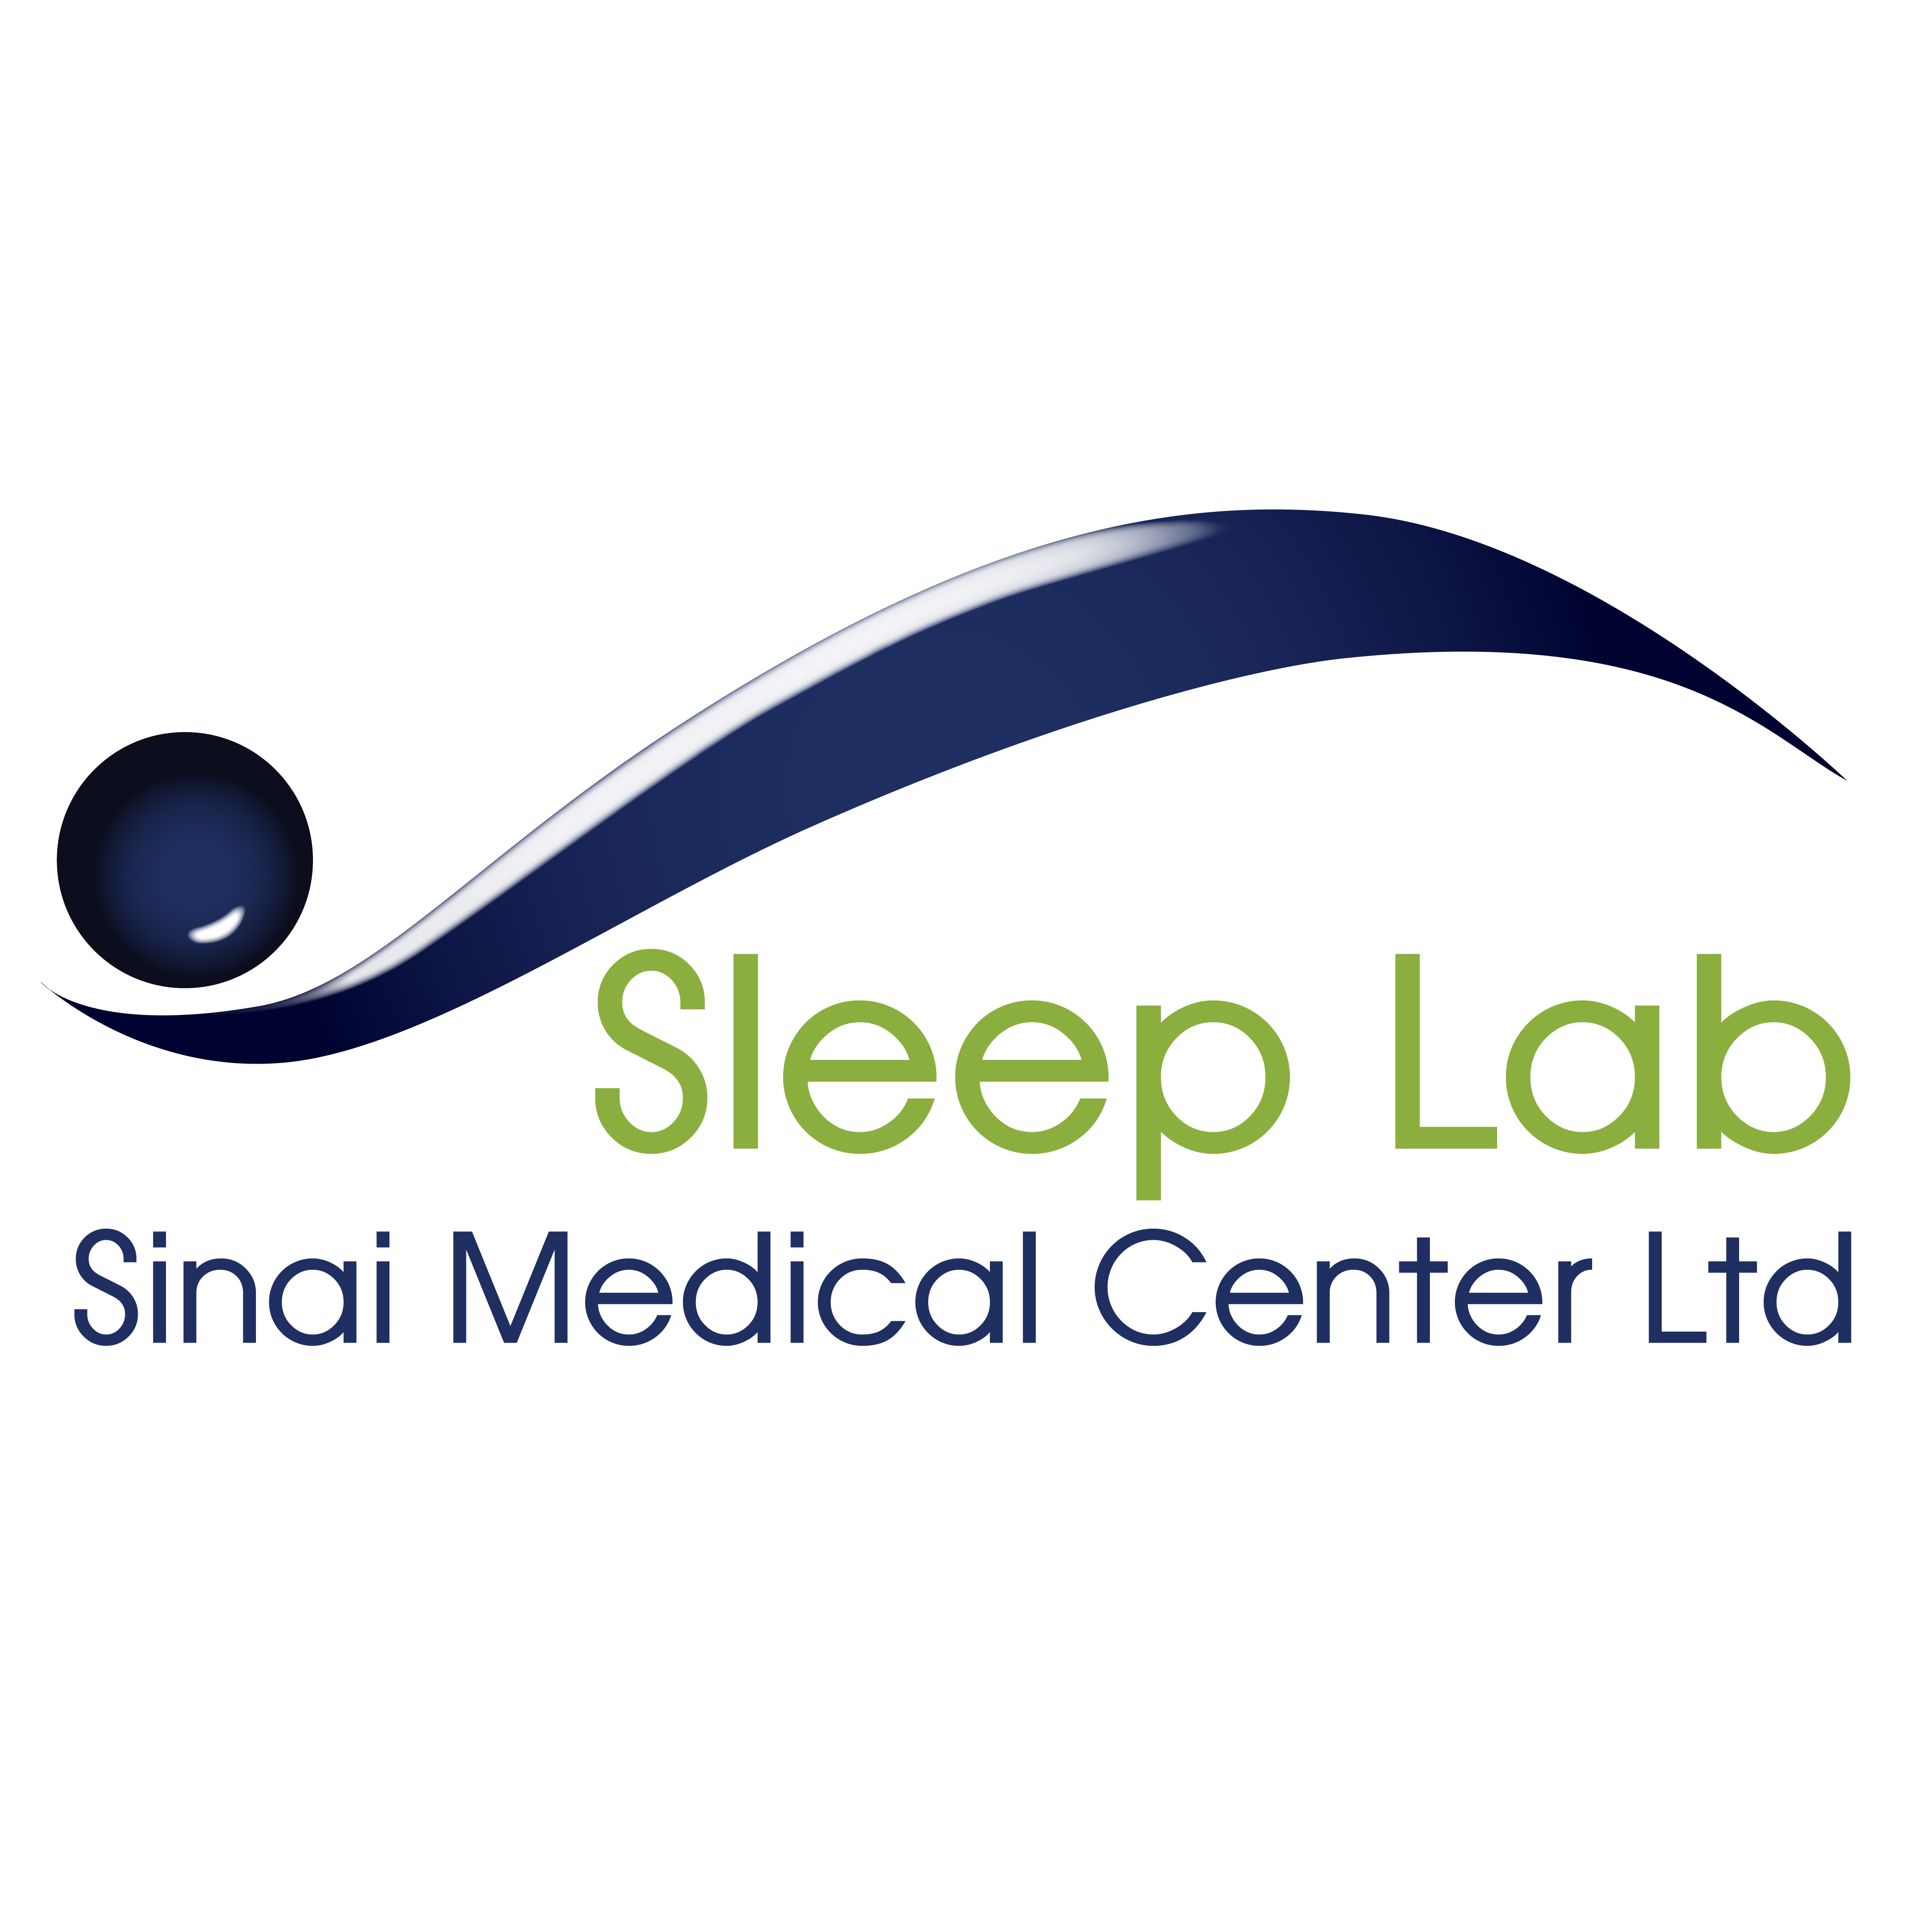 Sleep Lab at Sinai Medical Center Logo